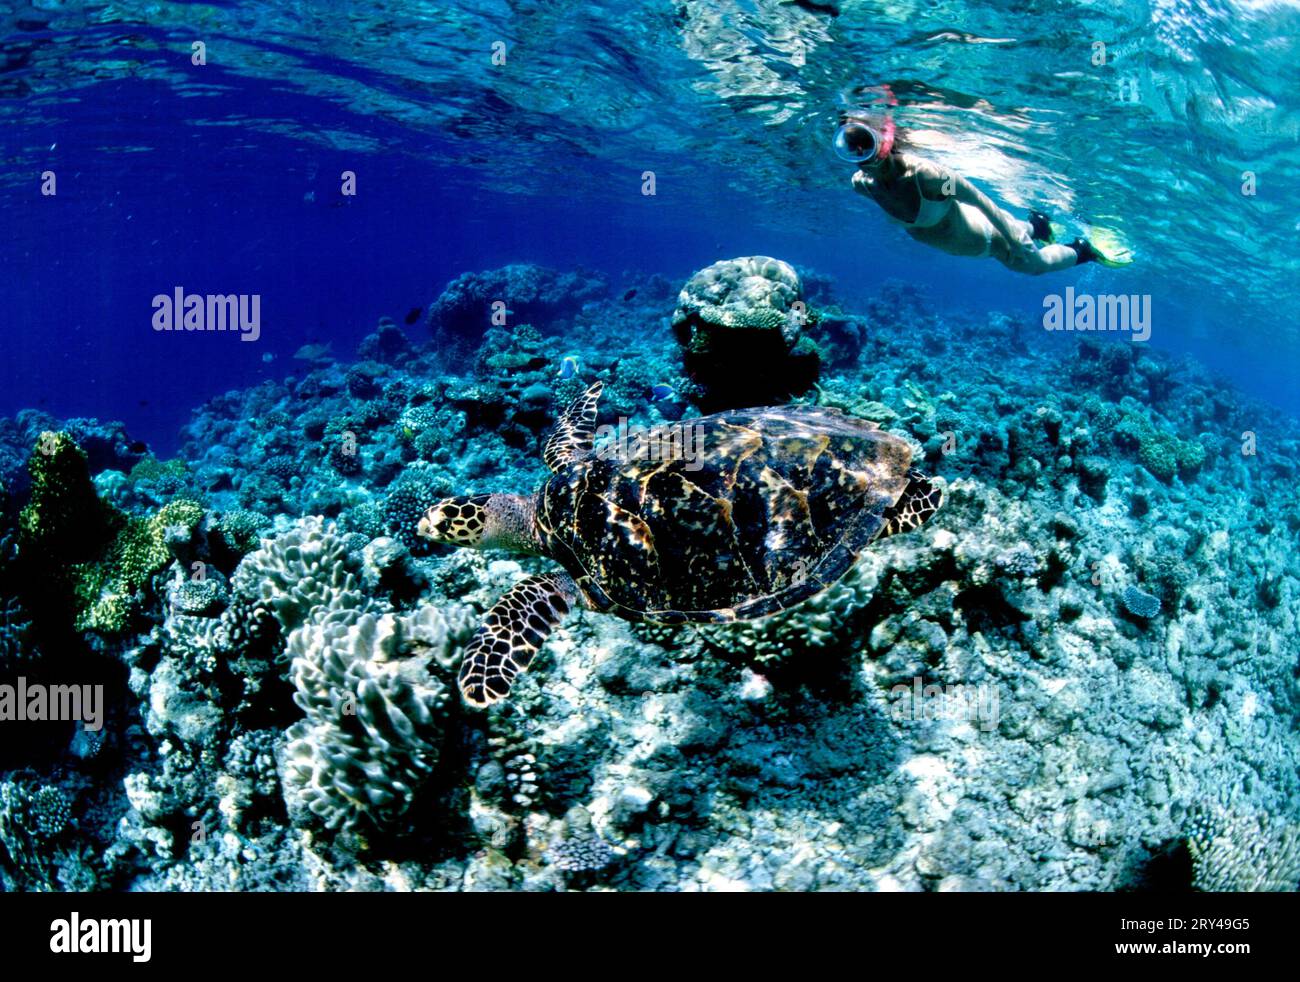 Seaturtle and snorkeler, Maldives, Sea turtle and snorkeler, Andere Tiere, other animals, Reptilien, reptils, Schildkroeten, turtles, Unterwasser Stock Photo